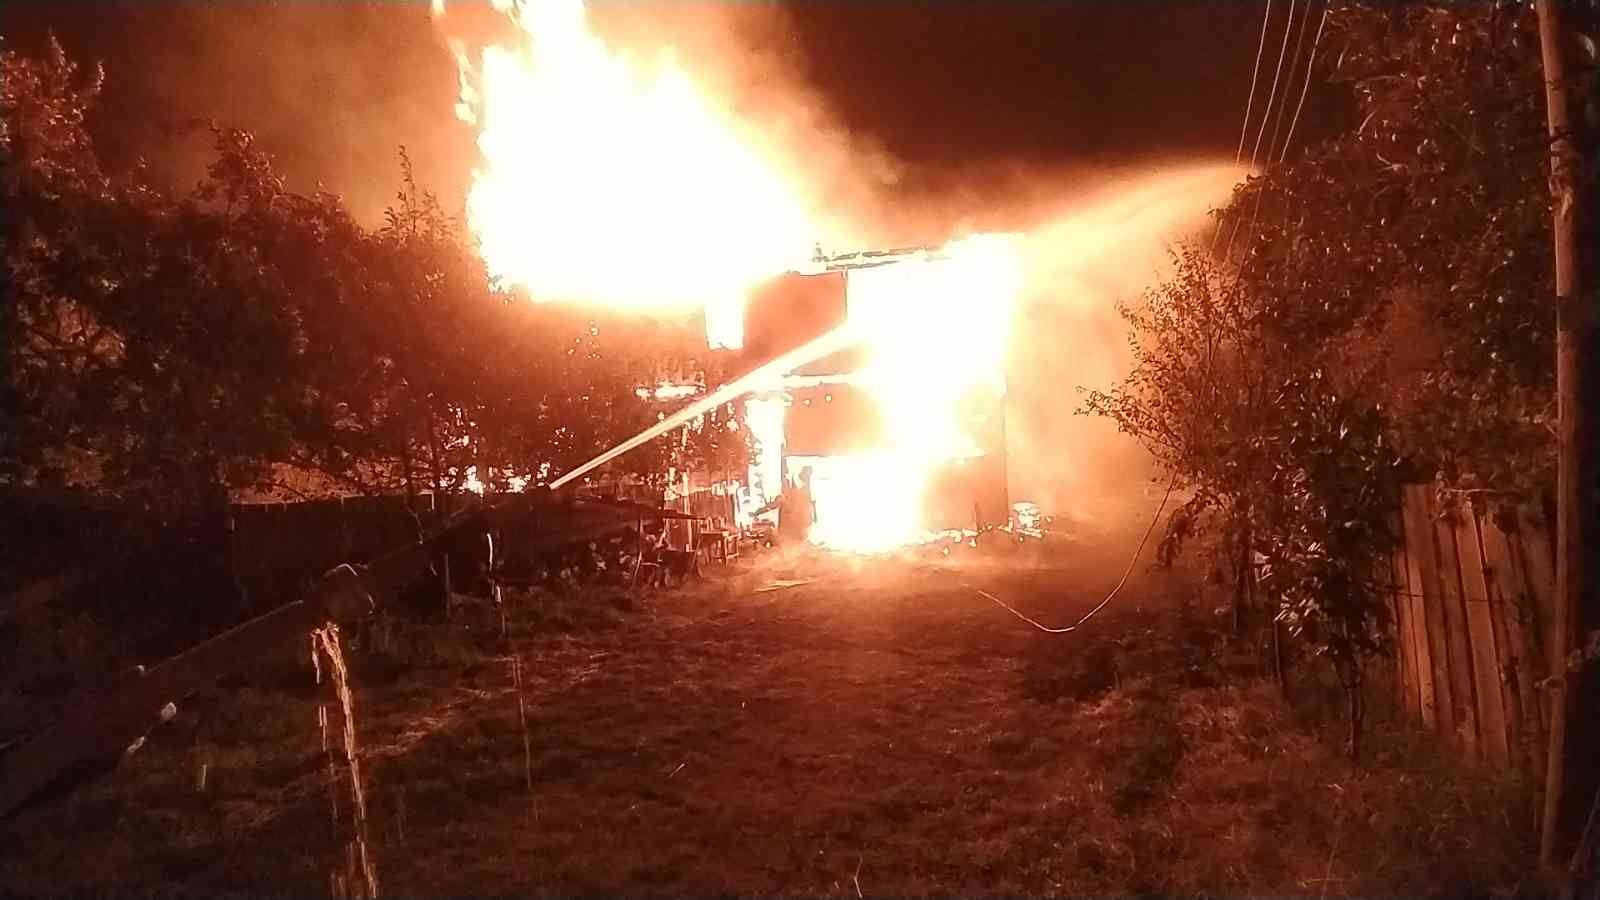 Kastamonu’da iki katlı ahşap ev alev alev yandı: 1 yaralı #kastamonu